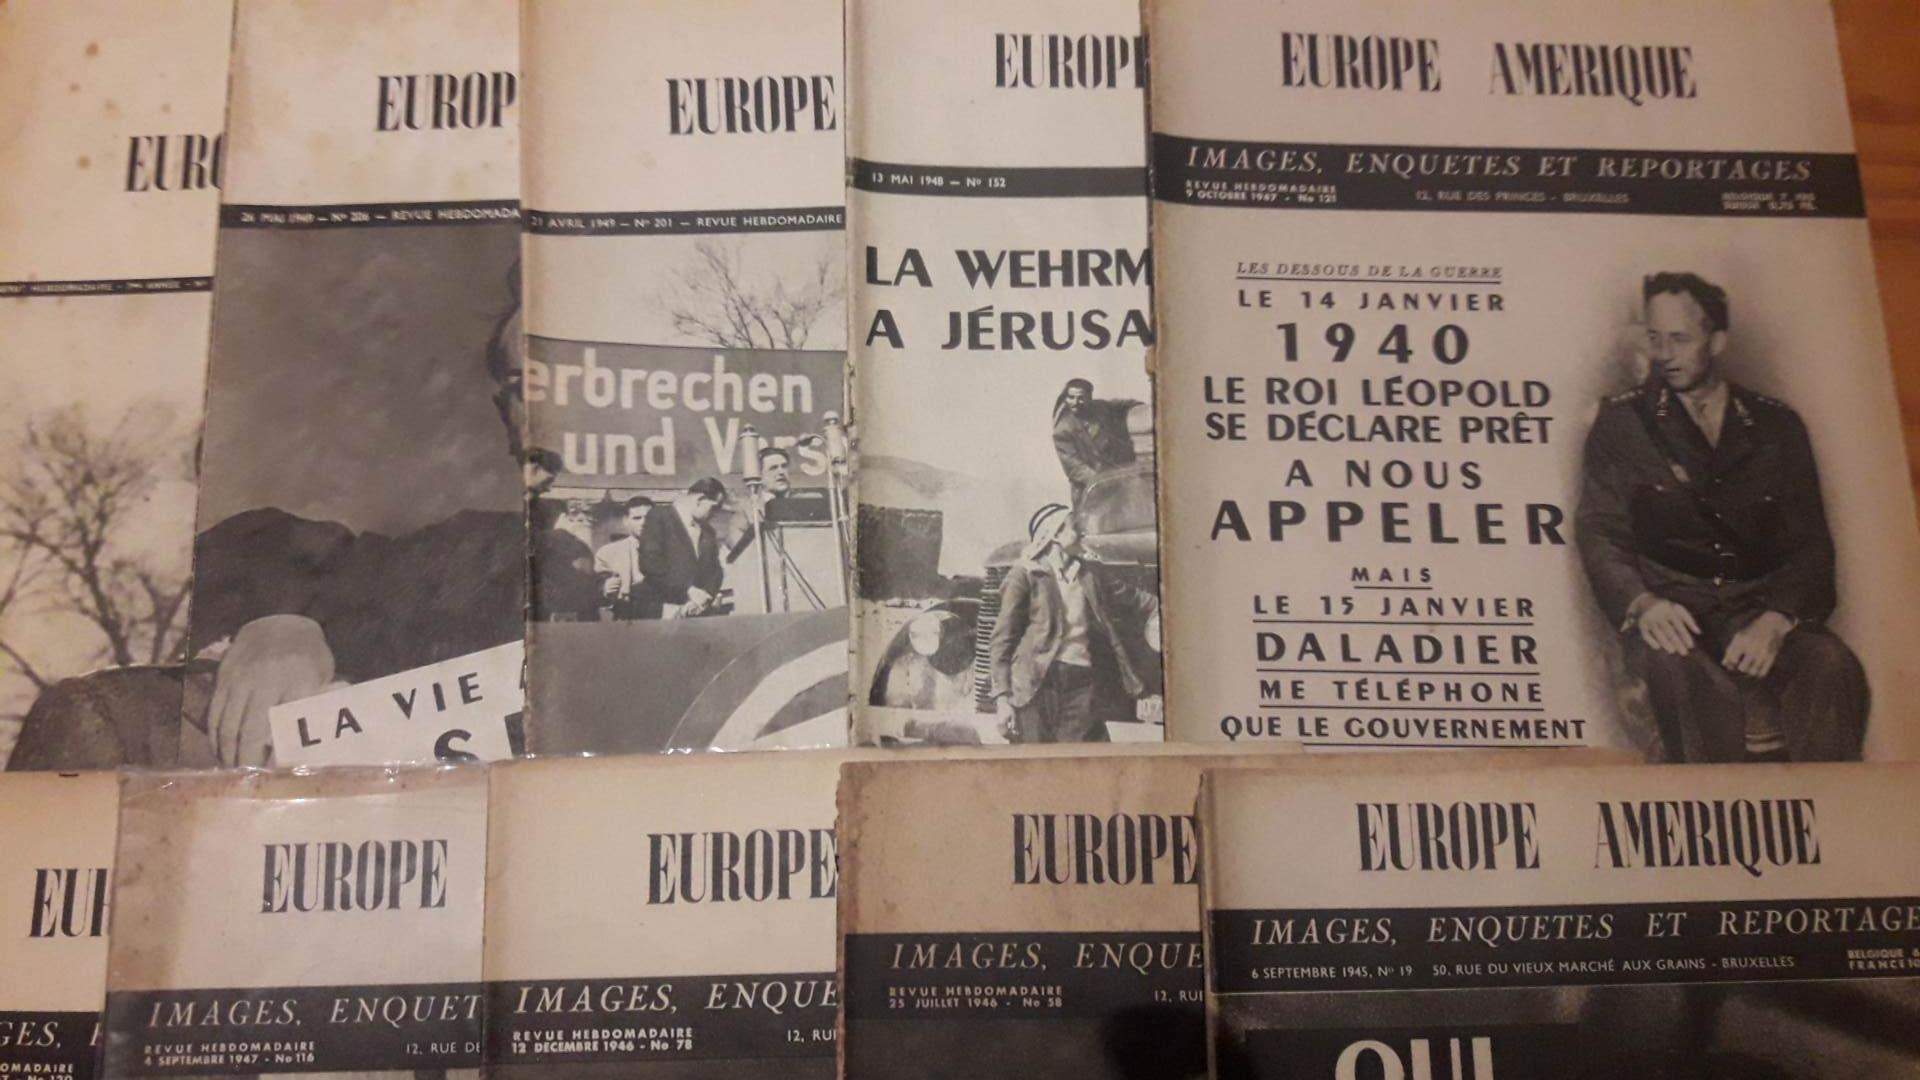 14 nummers van Europe Amerique 1945 -1949 / zeldzaam